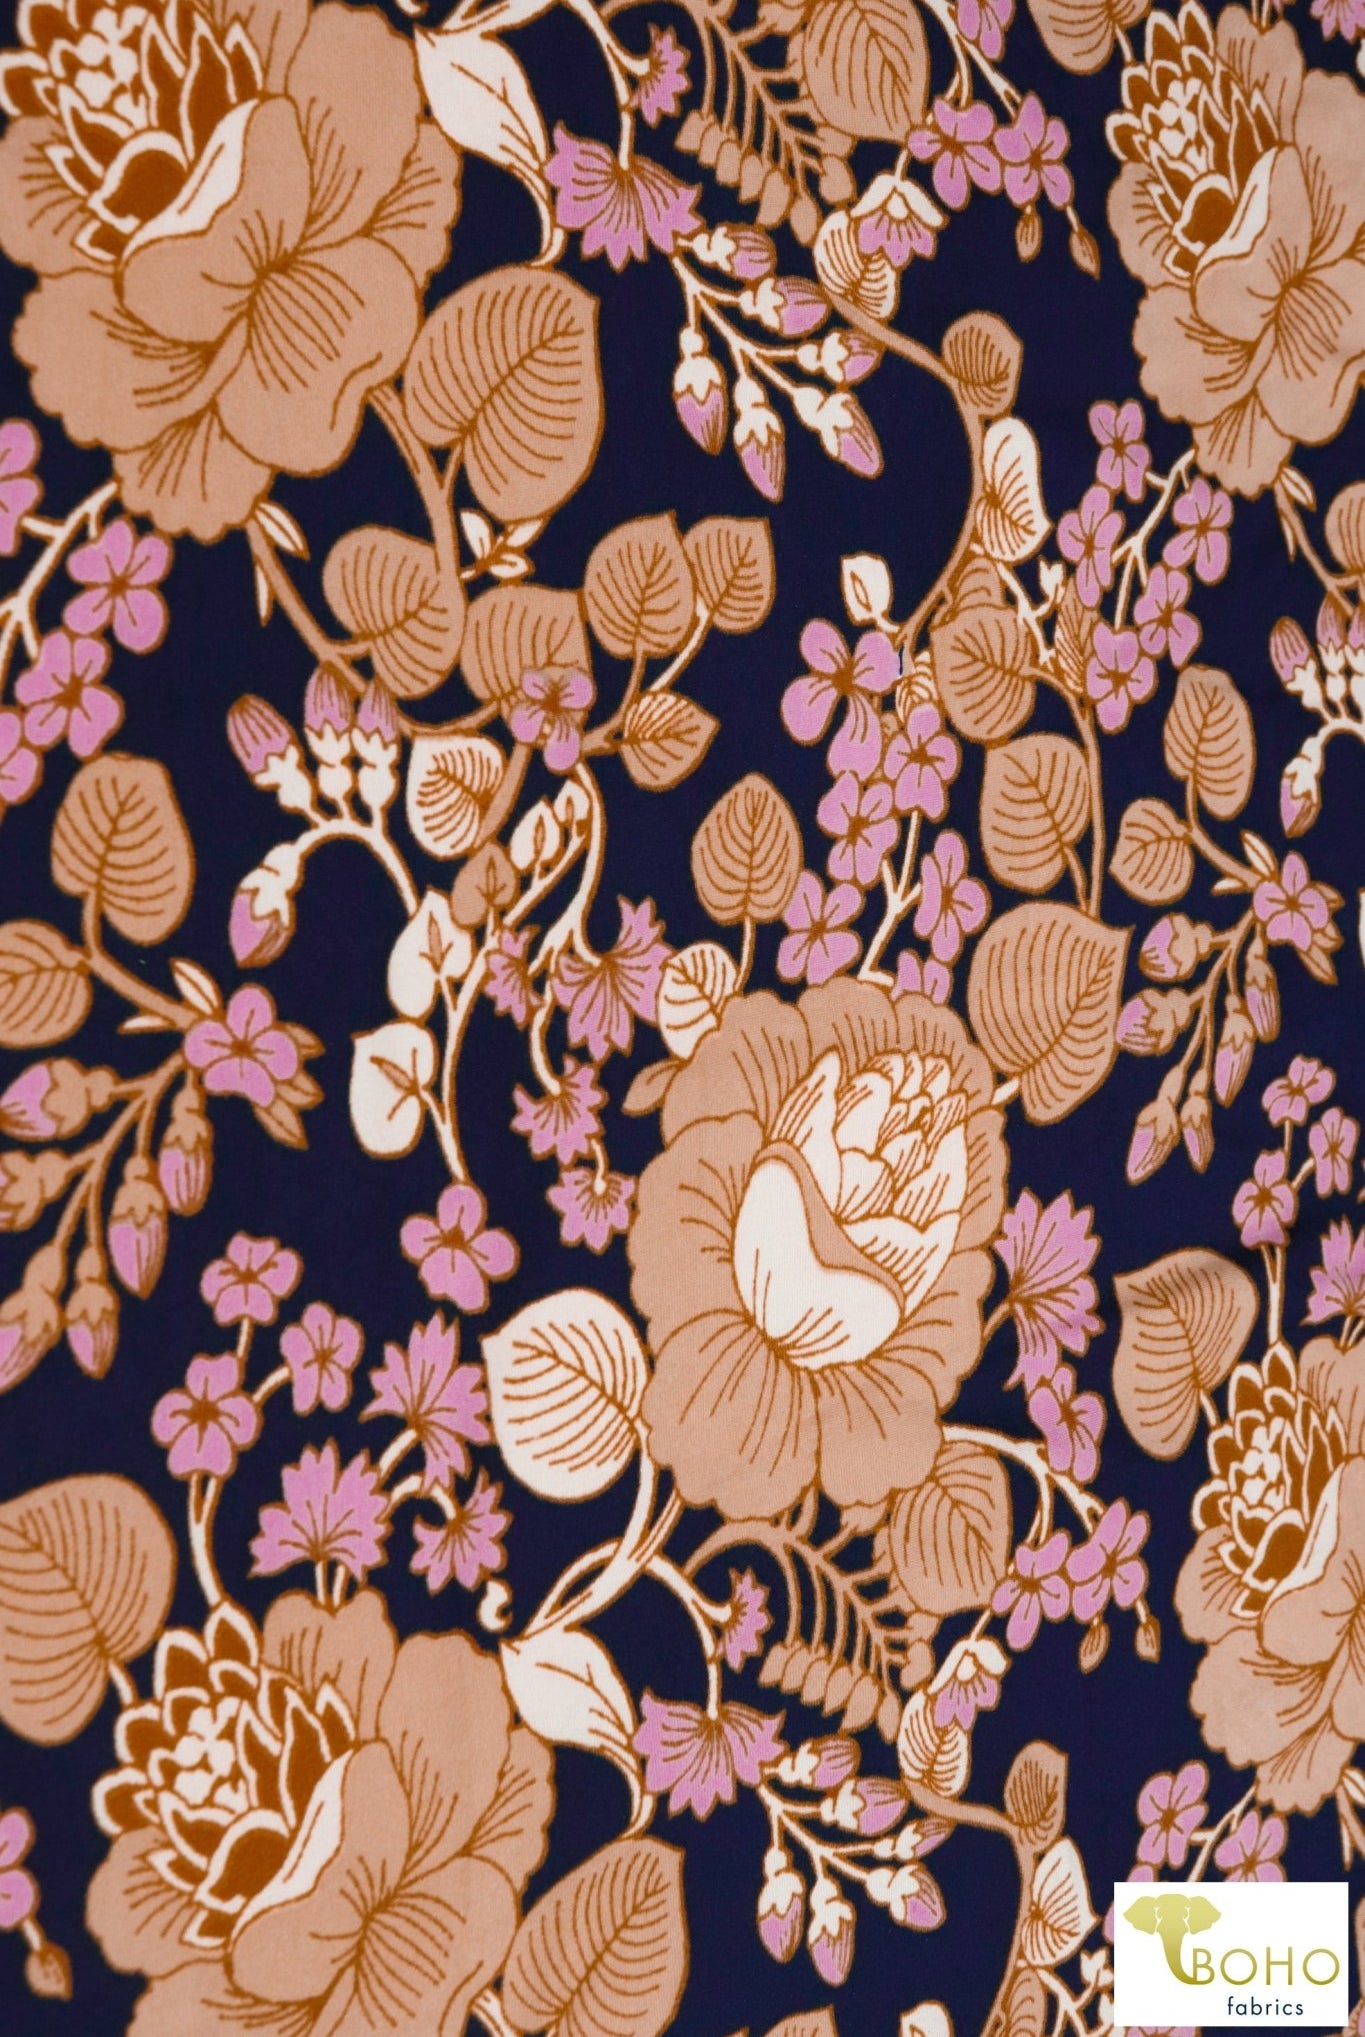 Lotus Vines on Navy Blue. Double Brushed Poly Knit Fabric. BP-112-NVY - Boho Fabrics